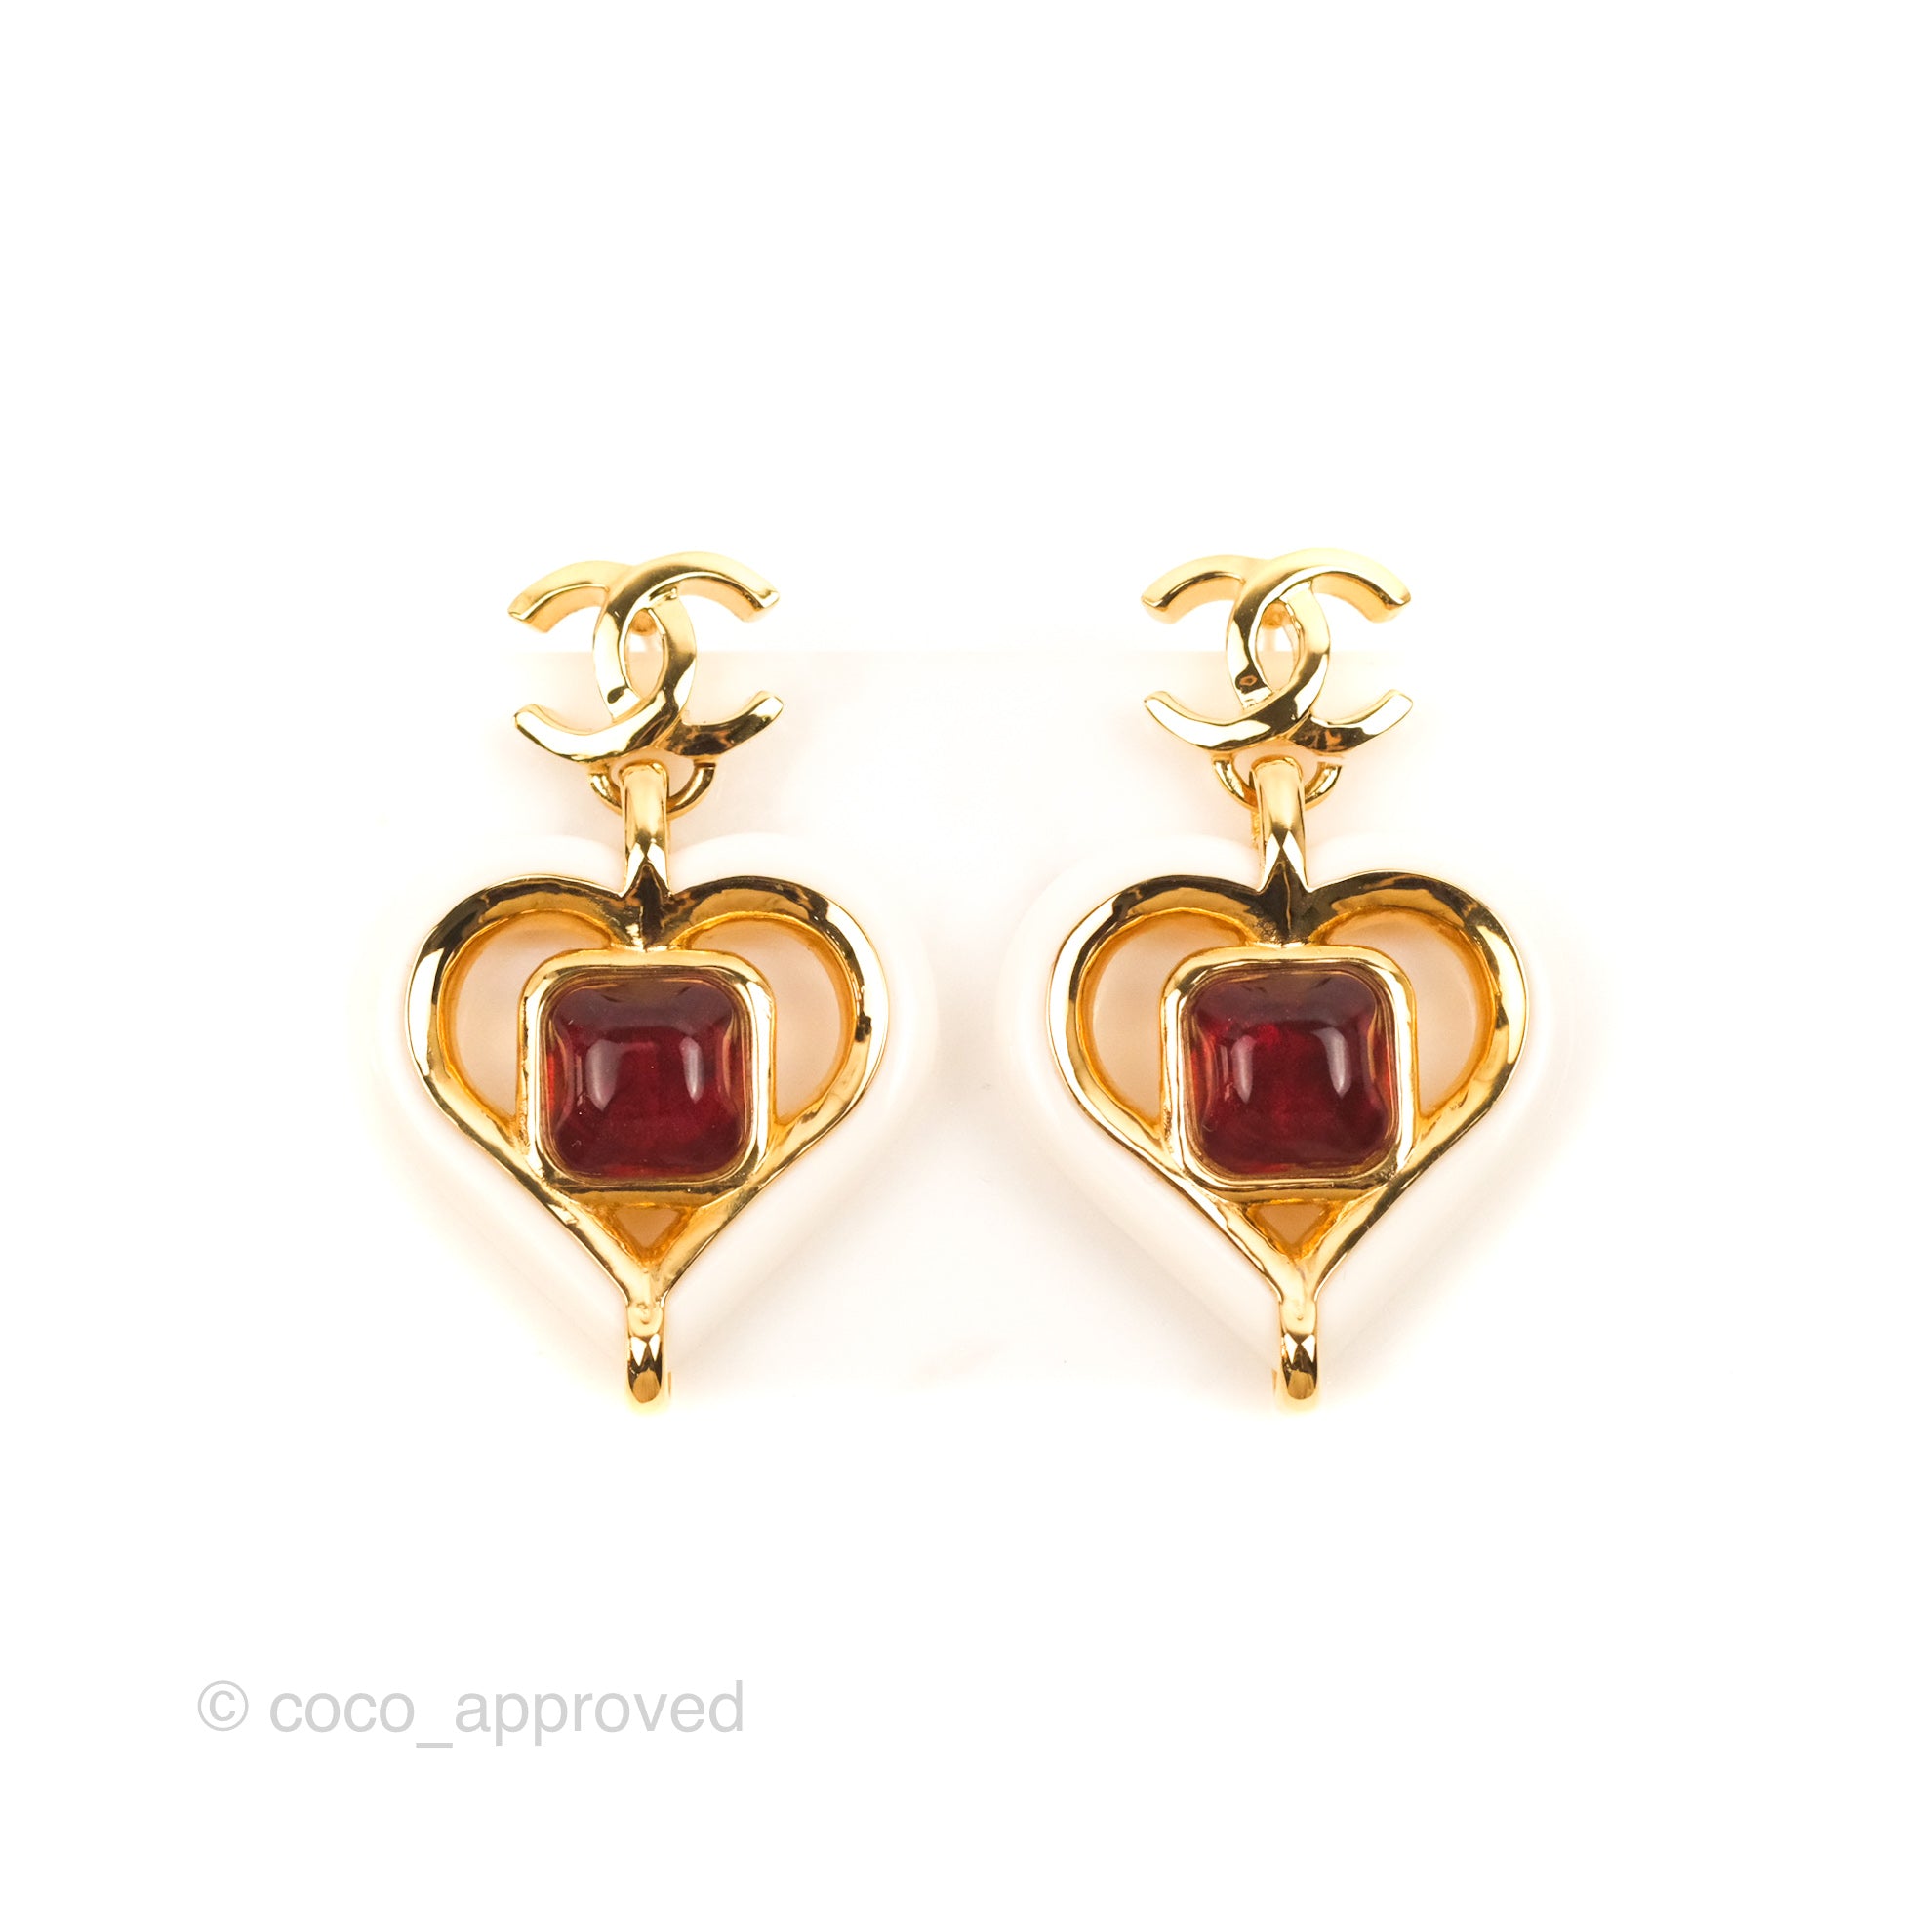 Cc earrings Chanel Gold in Metal - 28868058